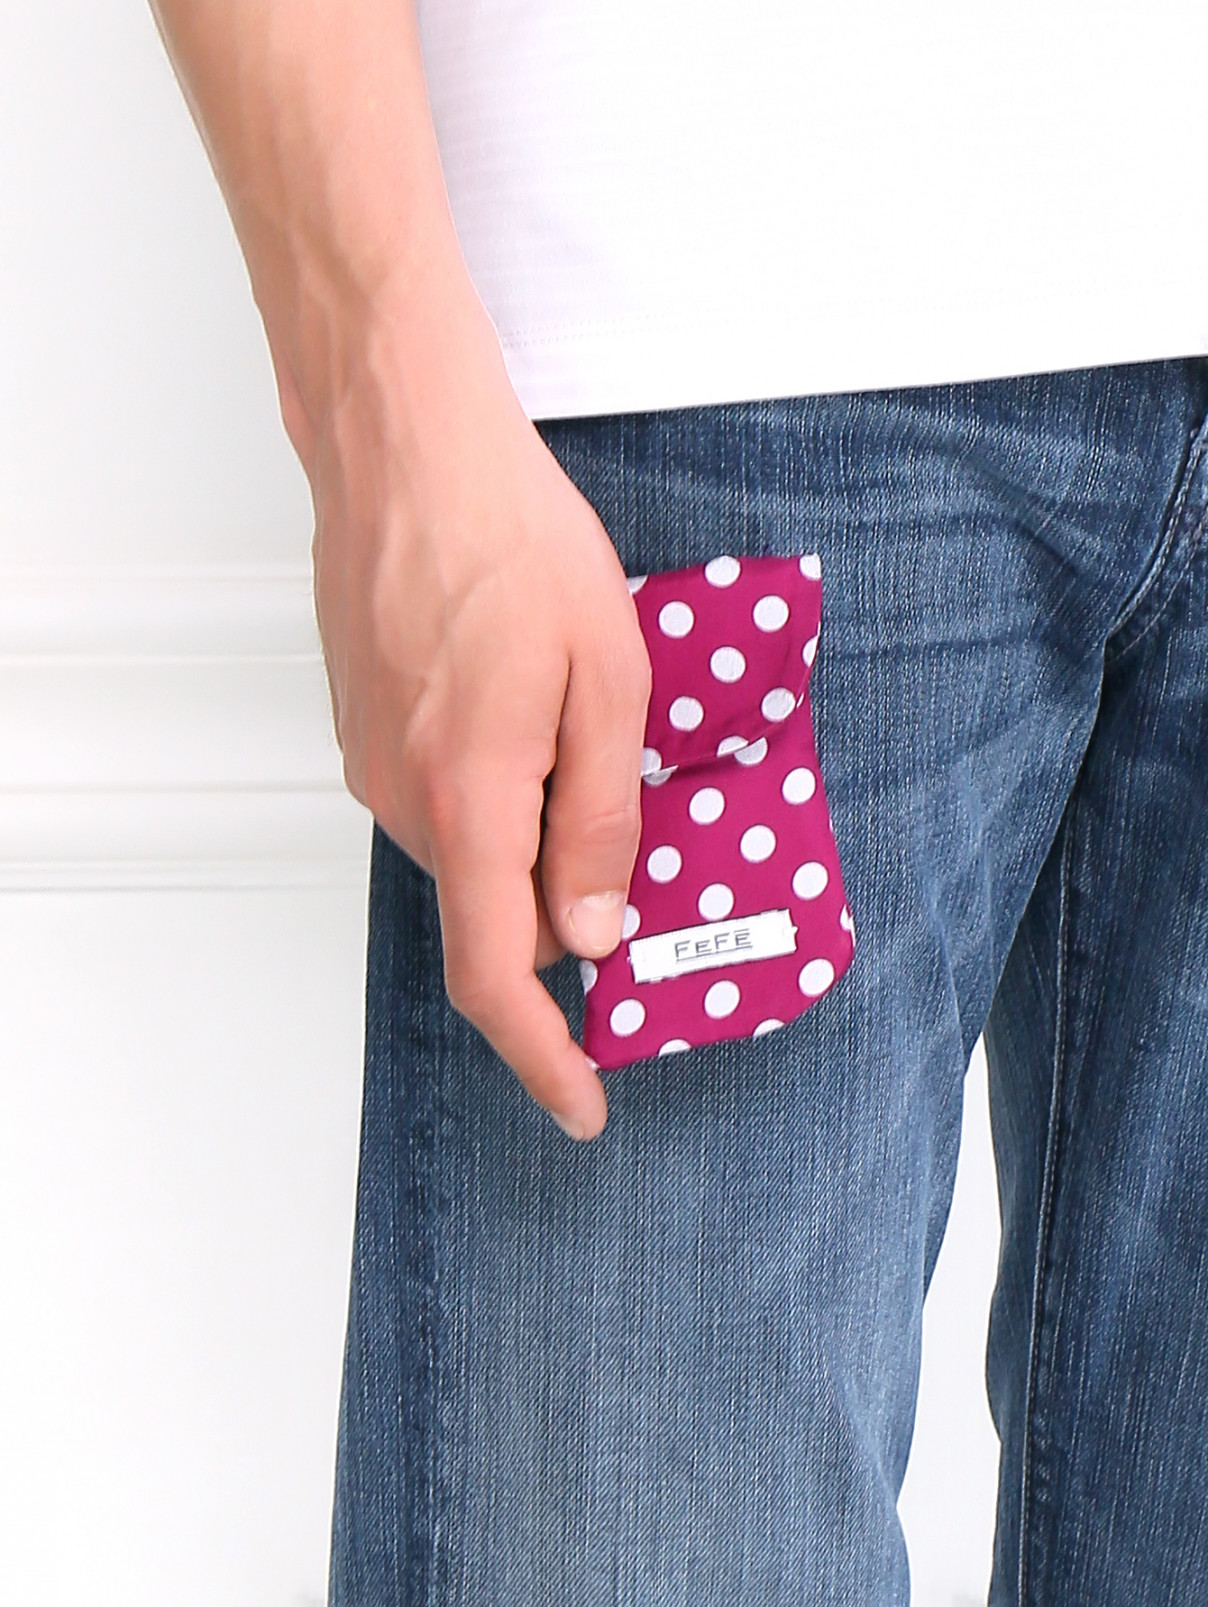 Чехол для IPhone из шелка с узором Fefe  –  Модель Общий вид  – Цвет:  Фиолетовый